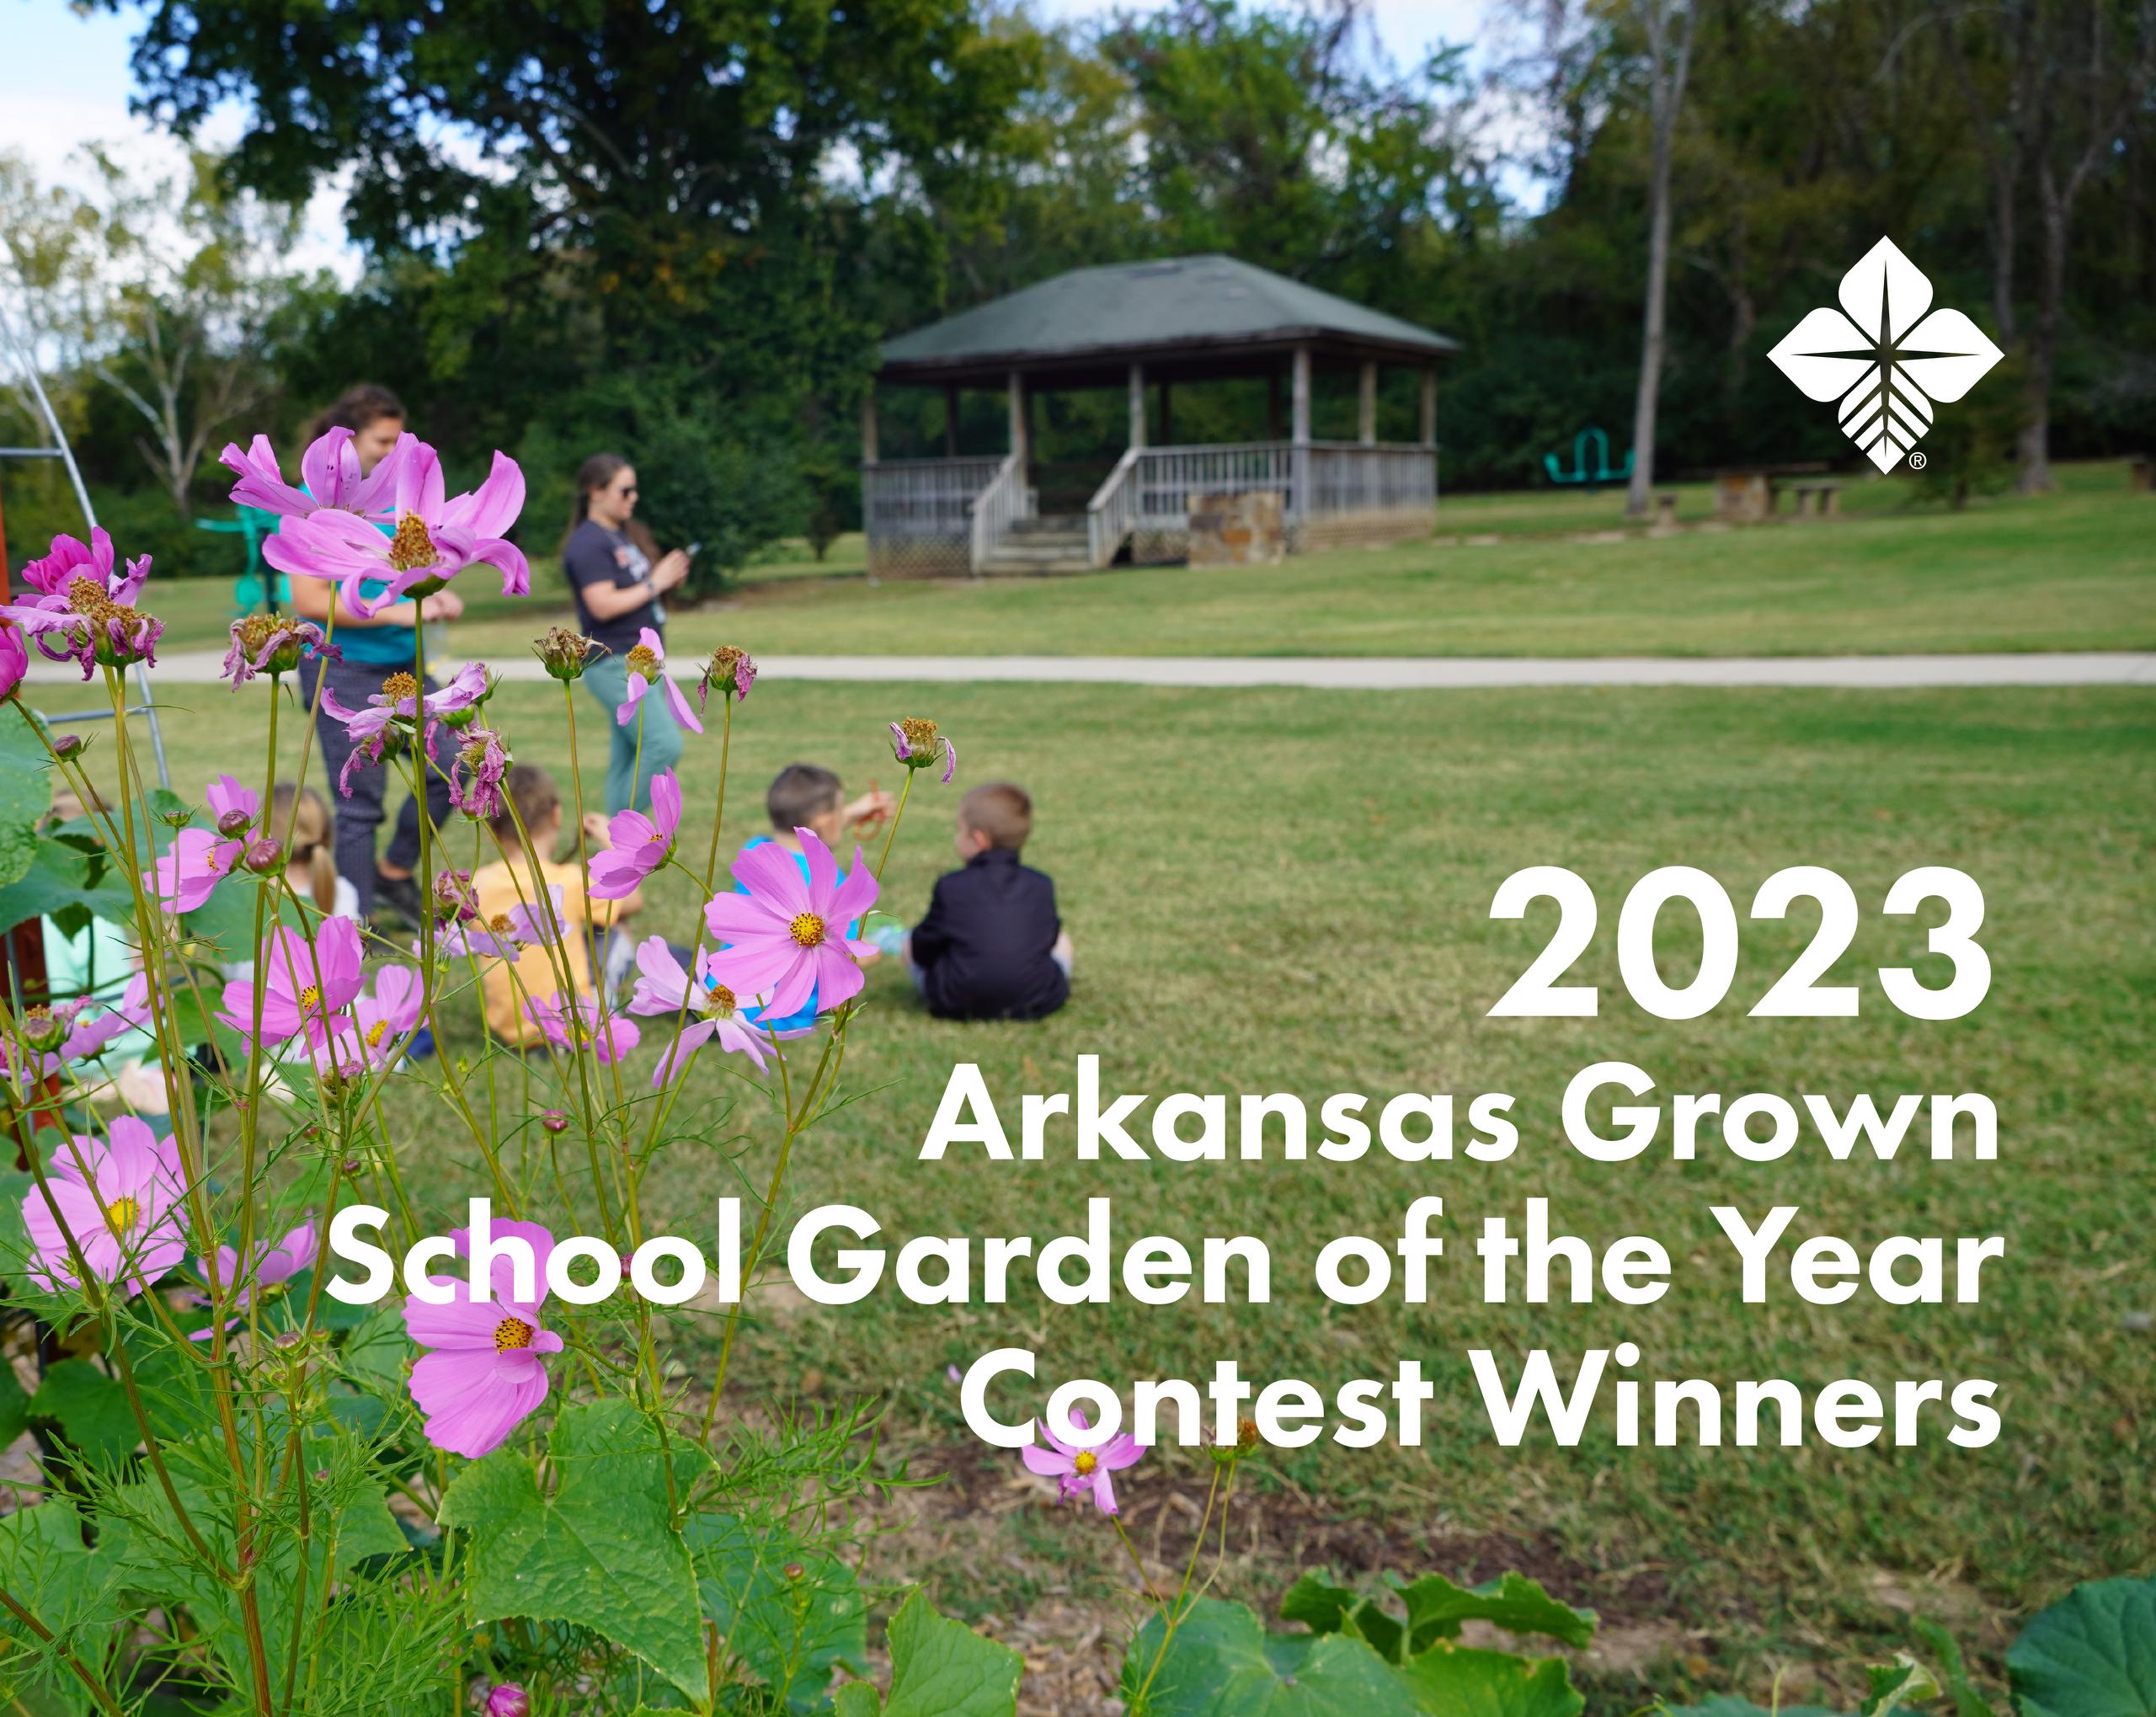 2023 Arkansas Grown School Garden of the Year Contest Winners, background image of students in school garden